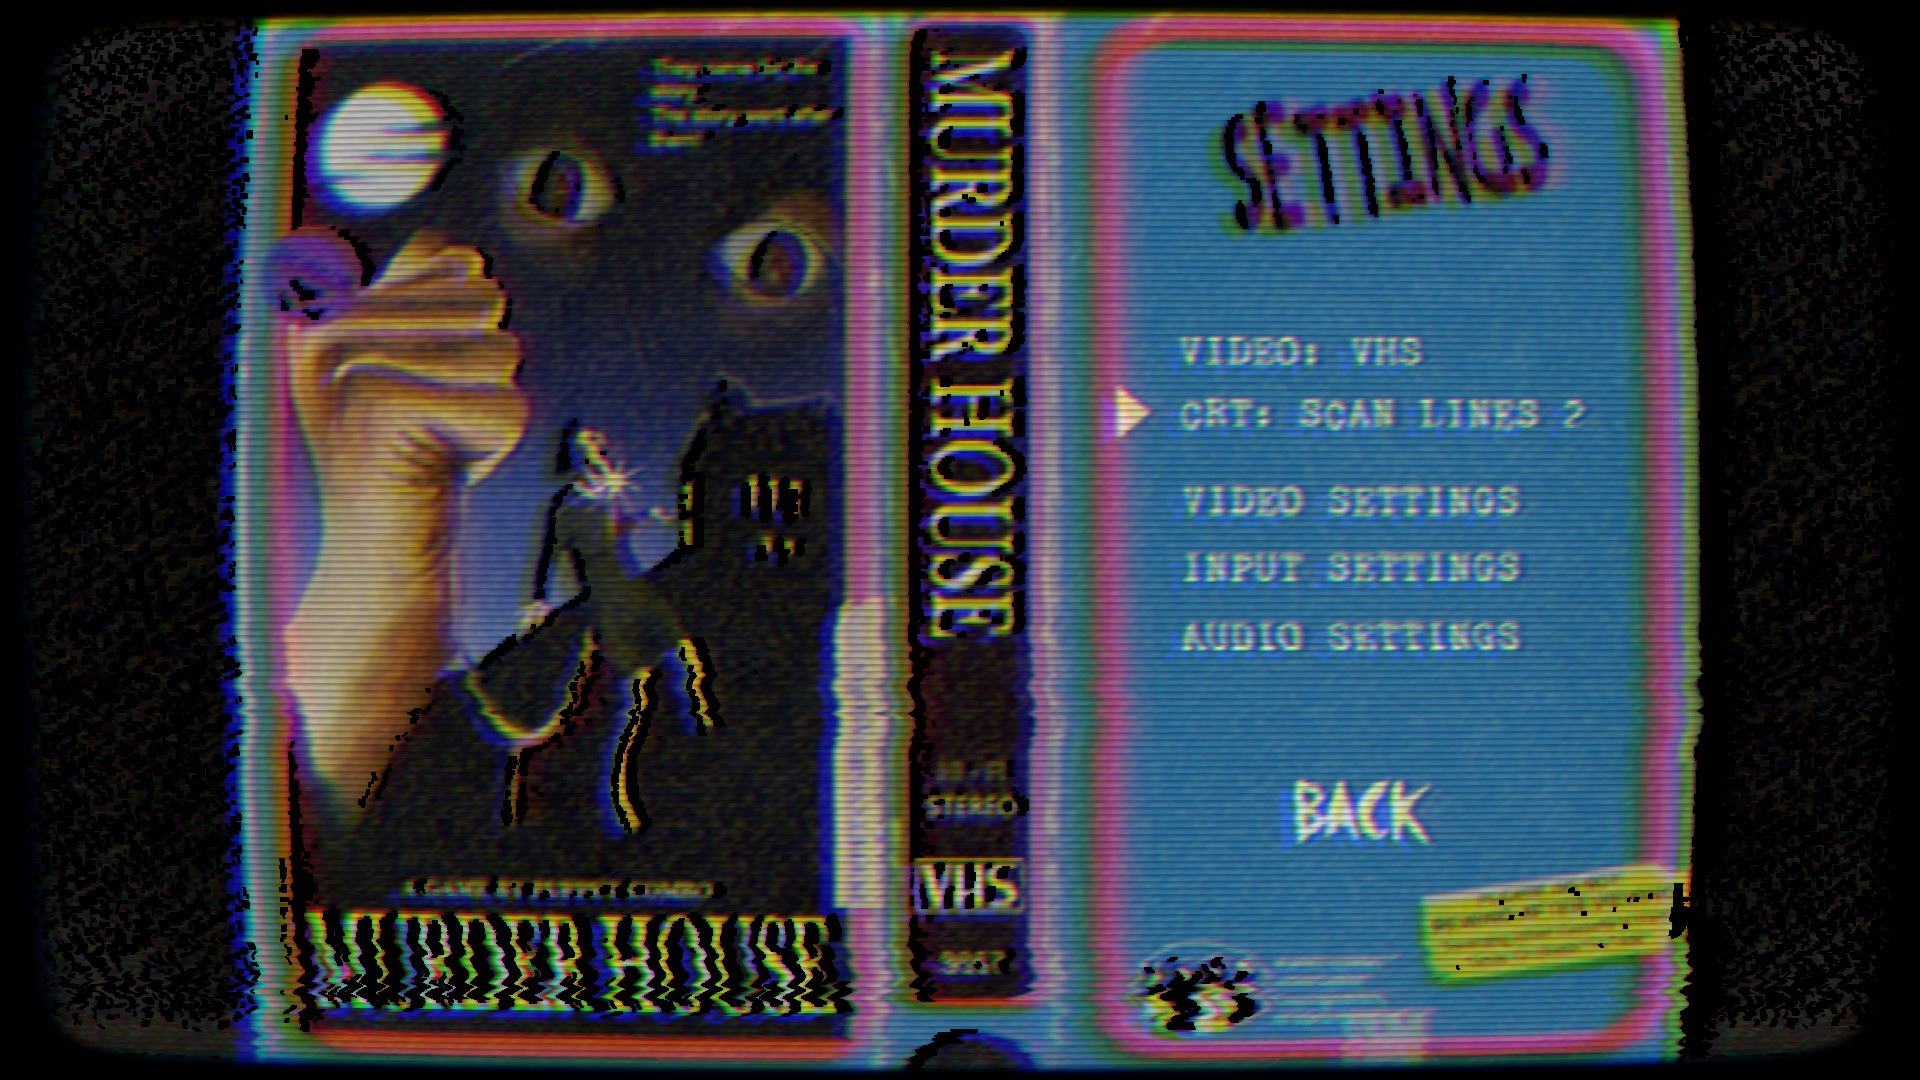 Review: Amanda the Adventurer - Nostalgic VHS Horror